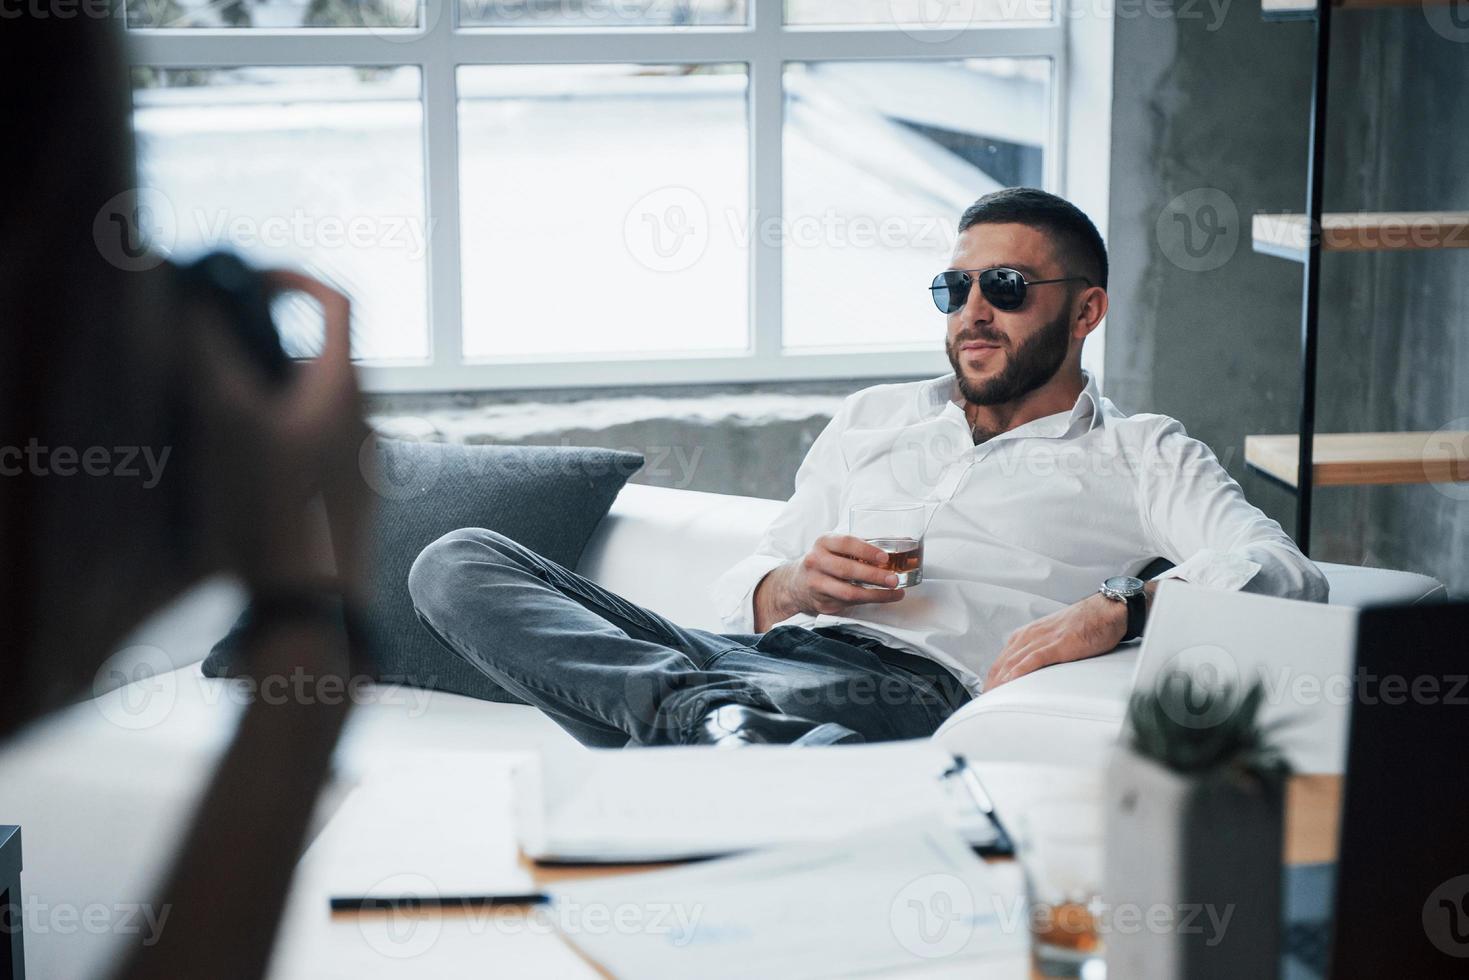 ambiance de rêve. photographie sur le côté gauche. jeune homme aux cheveux courts à lunettes de soleil assis sur un canapé au bureau photo